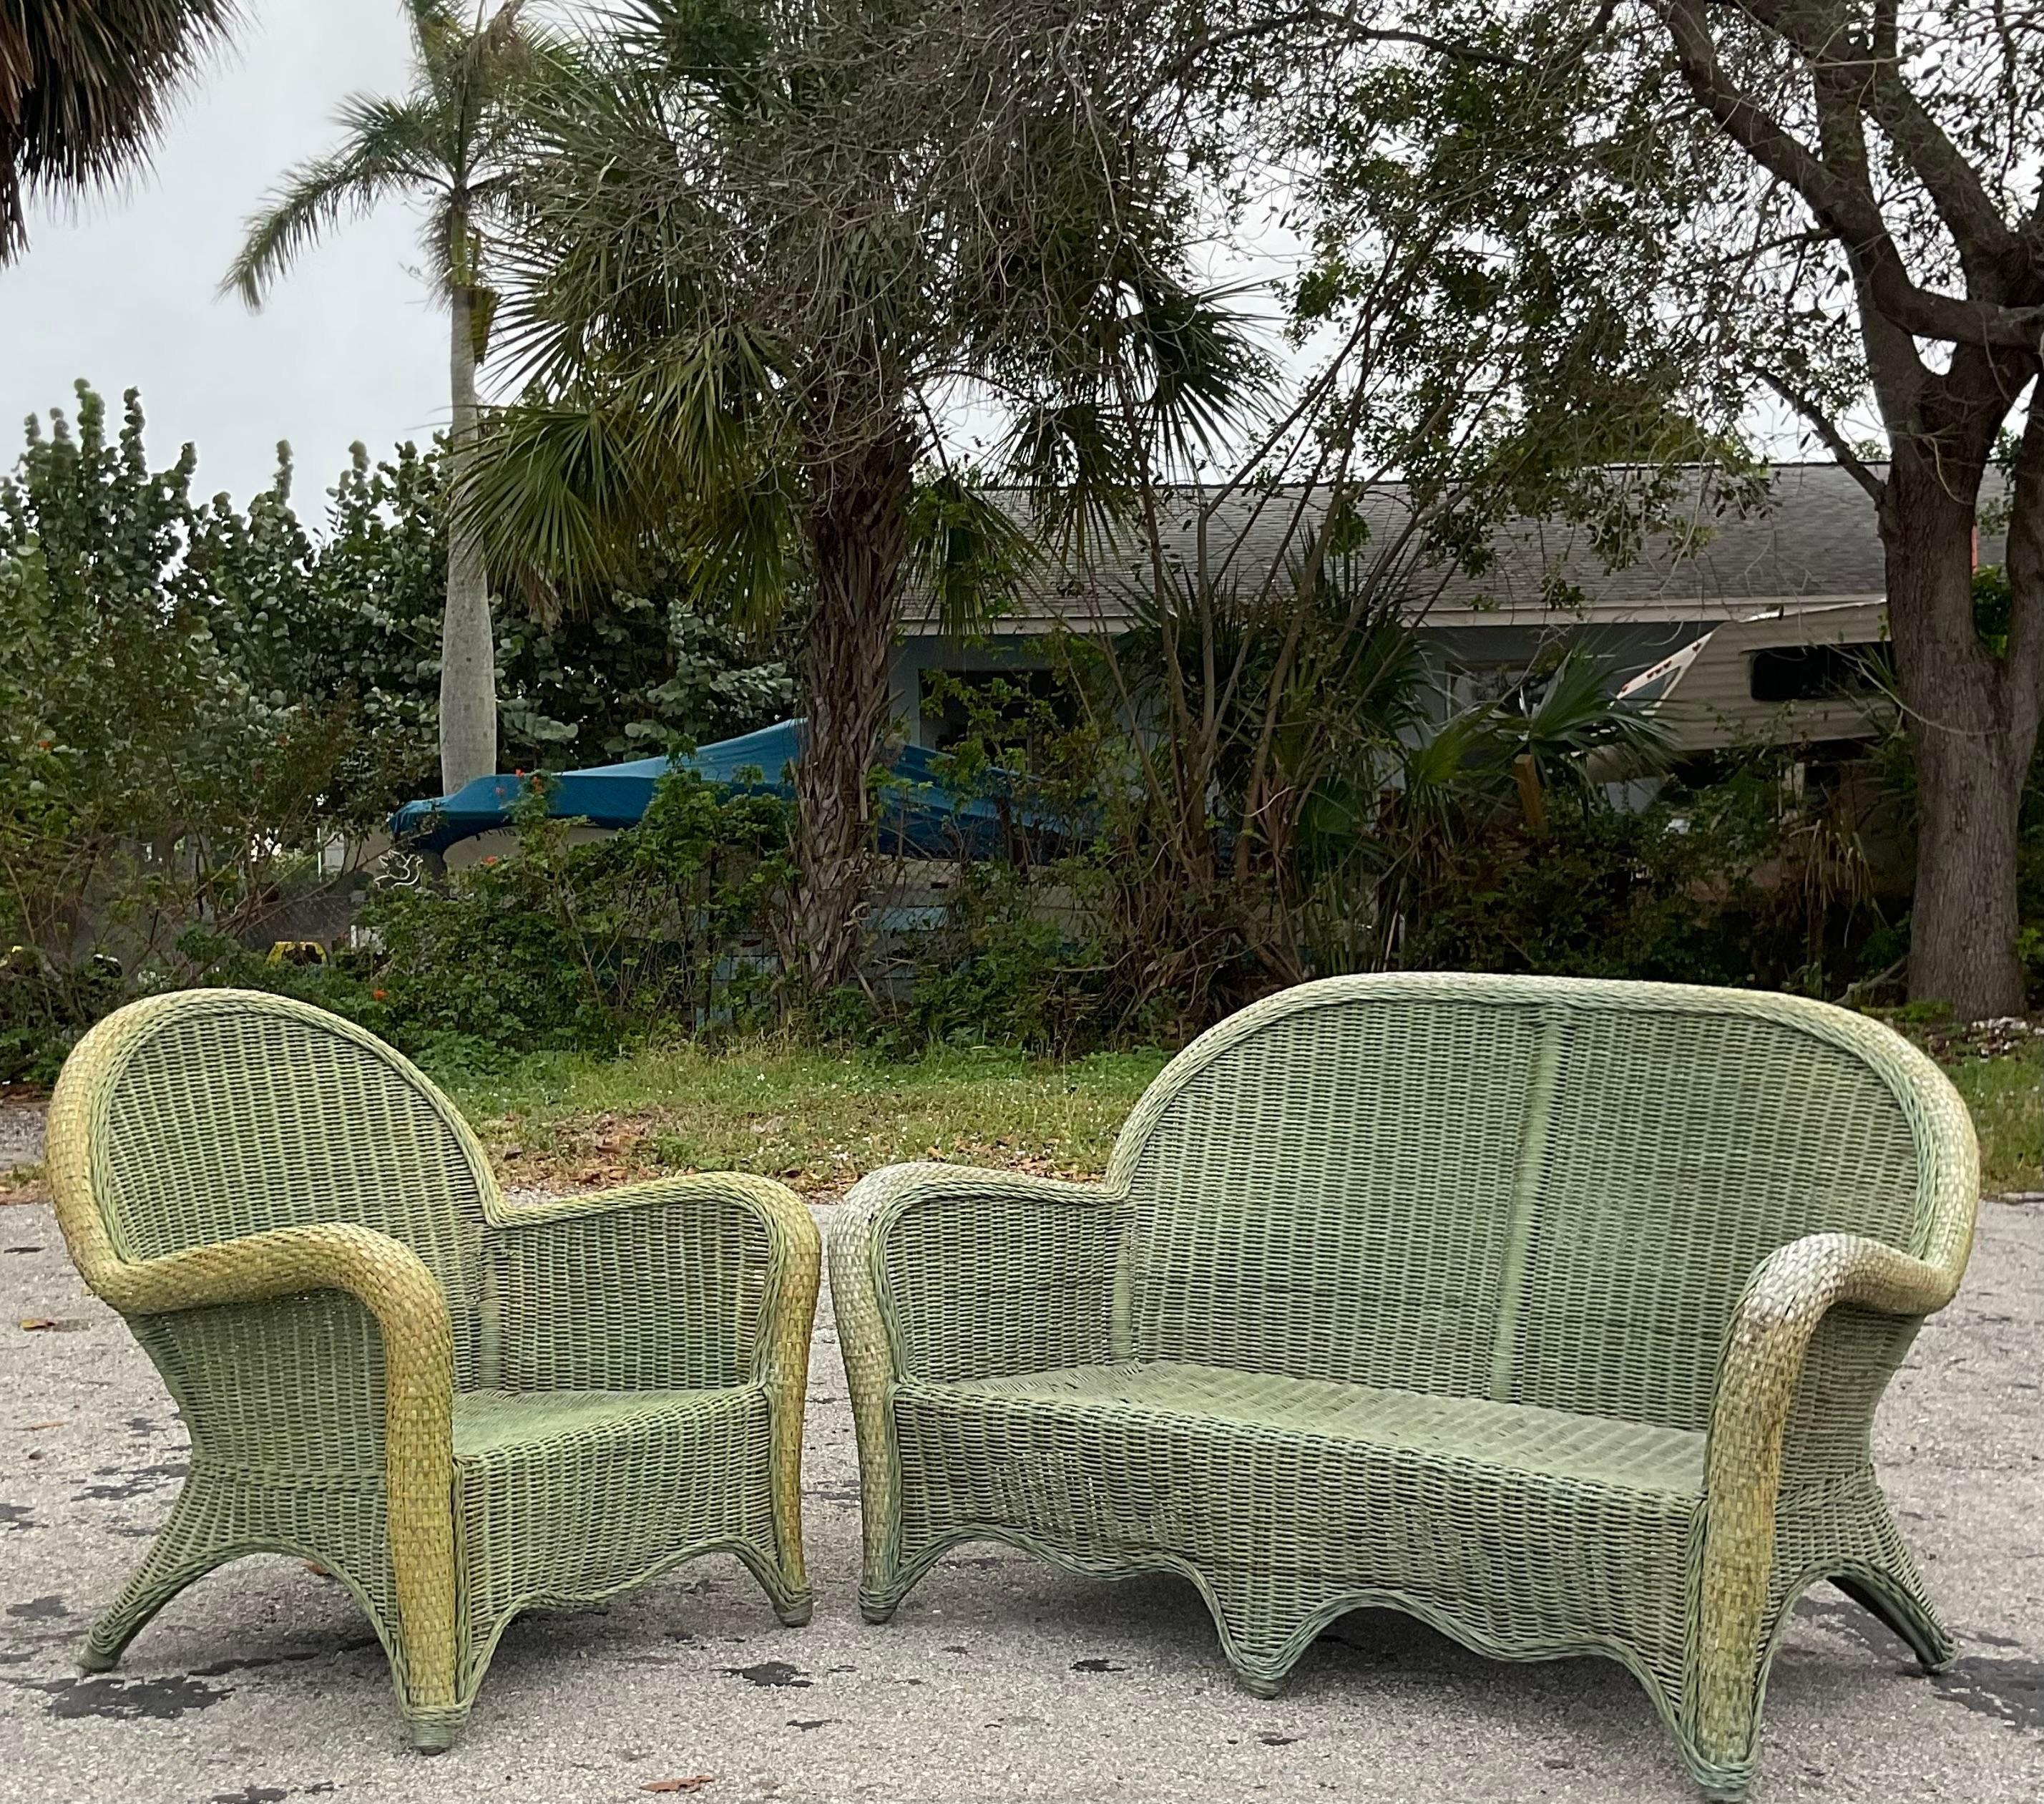 Ein fabelhaftes Set aus Liegesitz und Stuhl. Ein schickes Rattangeflecht im klassischen Rollback-Design. Eine schicke grüne Farbe mit einer schönen Patina von Zeit. Erworben aus einem Nachlass in Palm Beach.

Stuhl 30x22.5x33.5